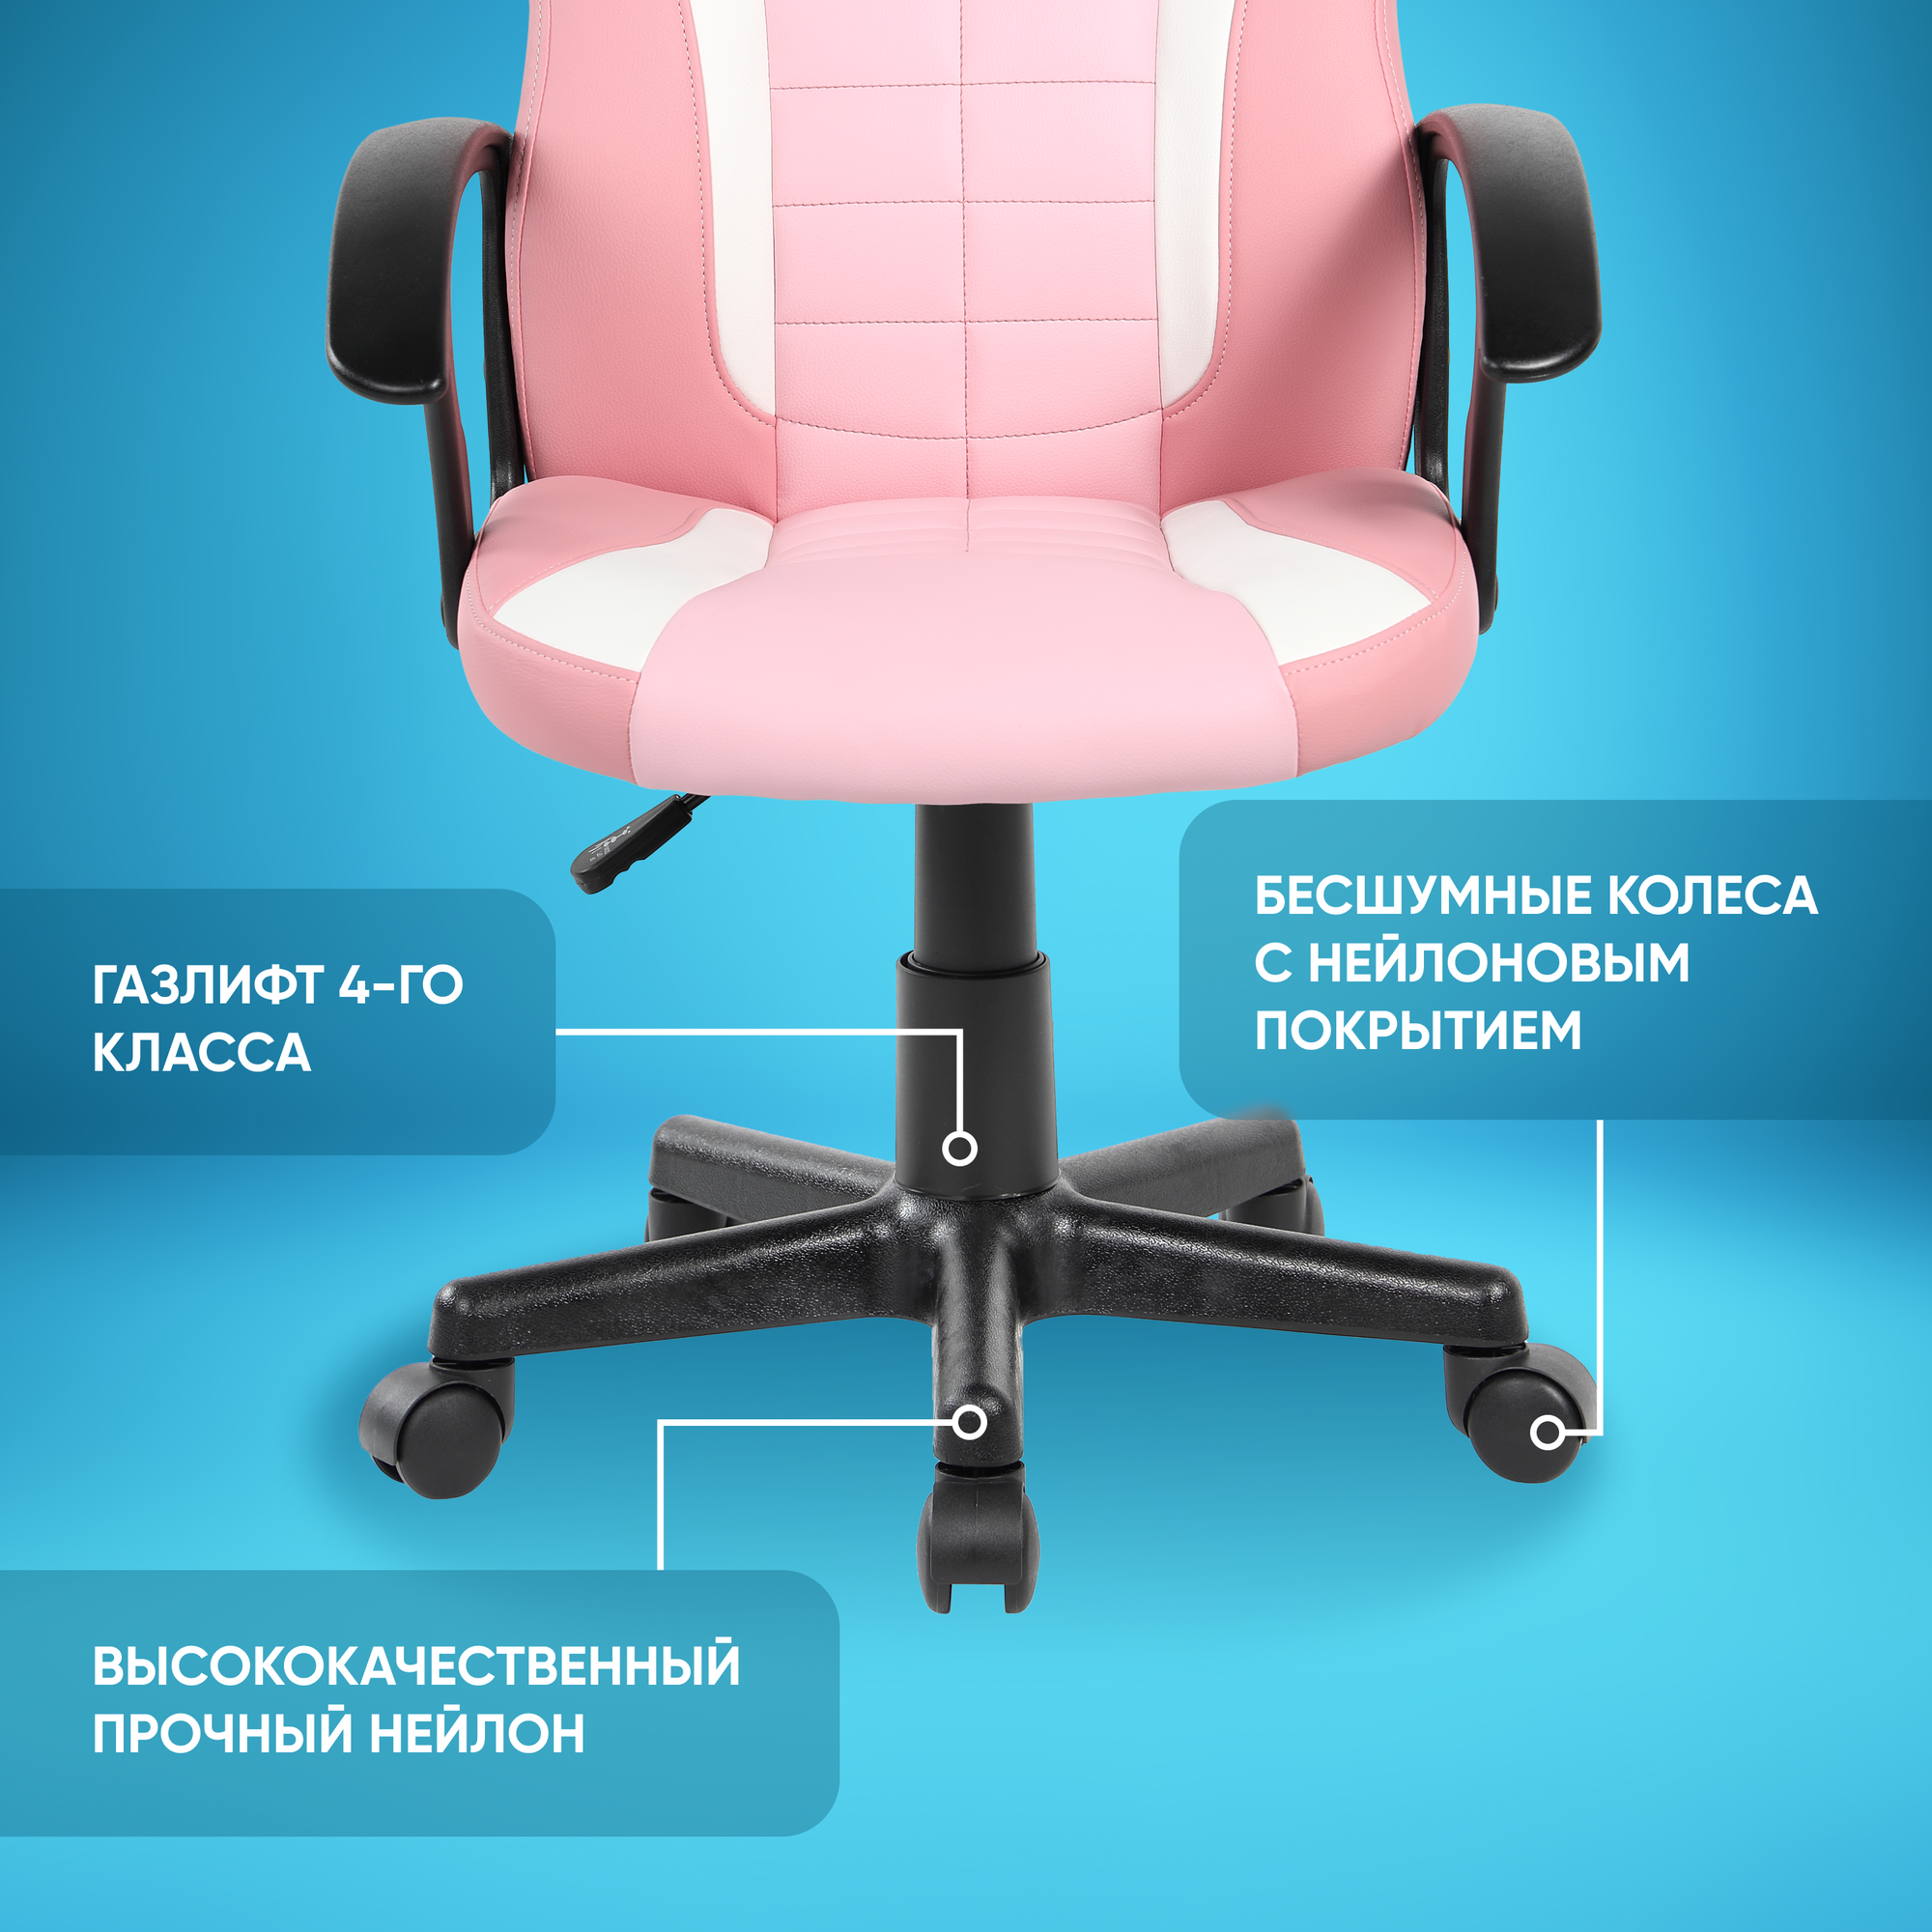 Игровое компьютерное кресло для детей и подростков CYBERTRACER розовое